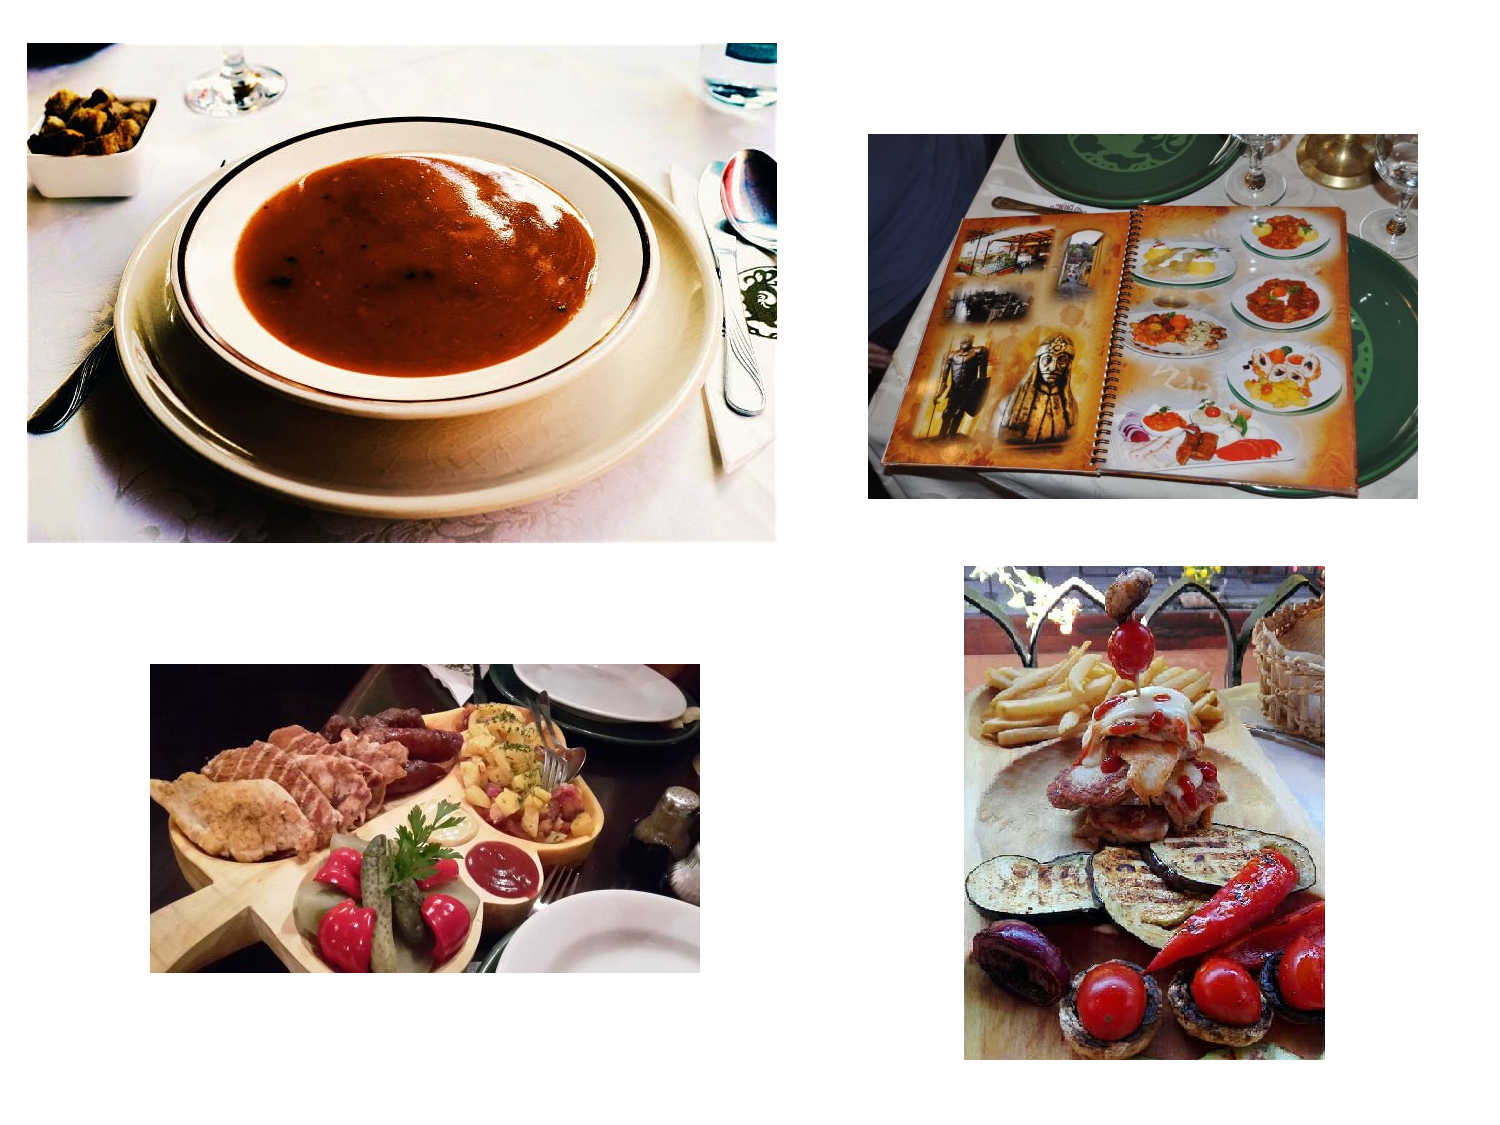 Quelques plats au menu de Casa Vlad Dracul : la soupe Dracula, le steak Dracula (en bas à droite) et le dîner Dracula (en bas à gauche).